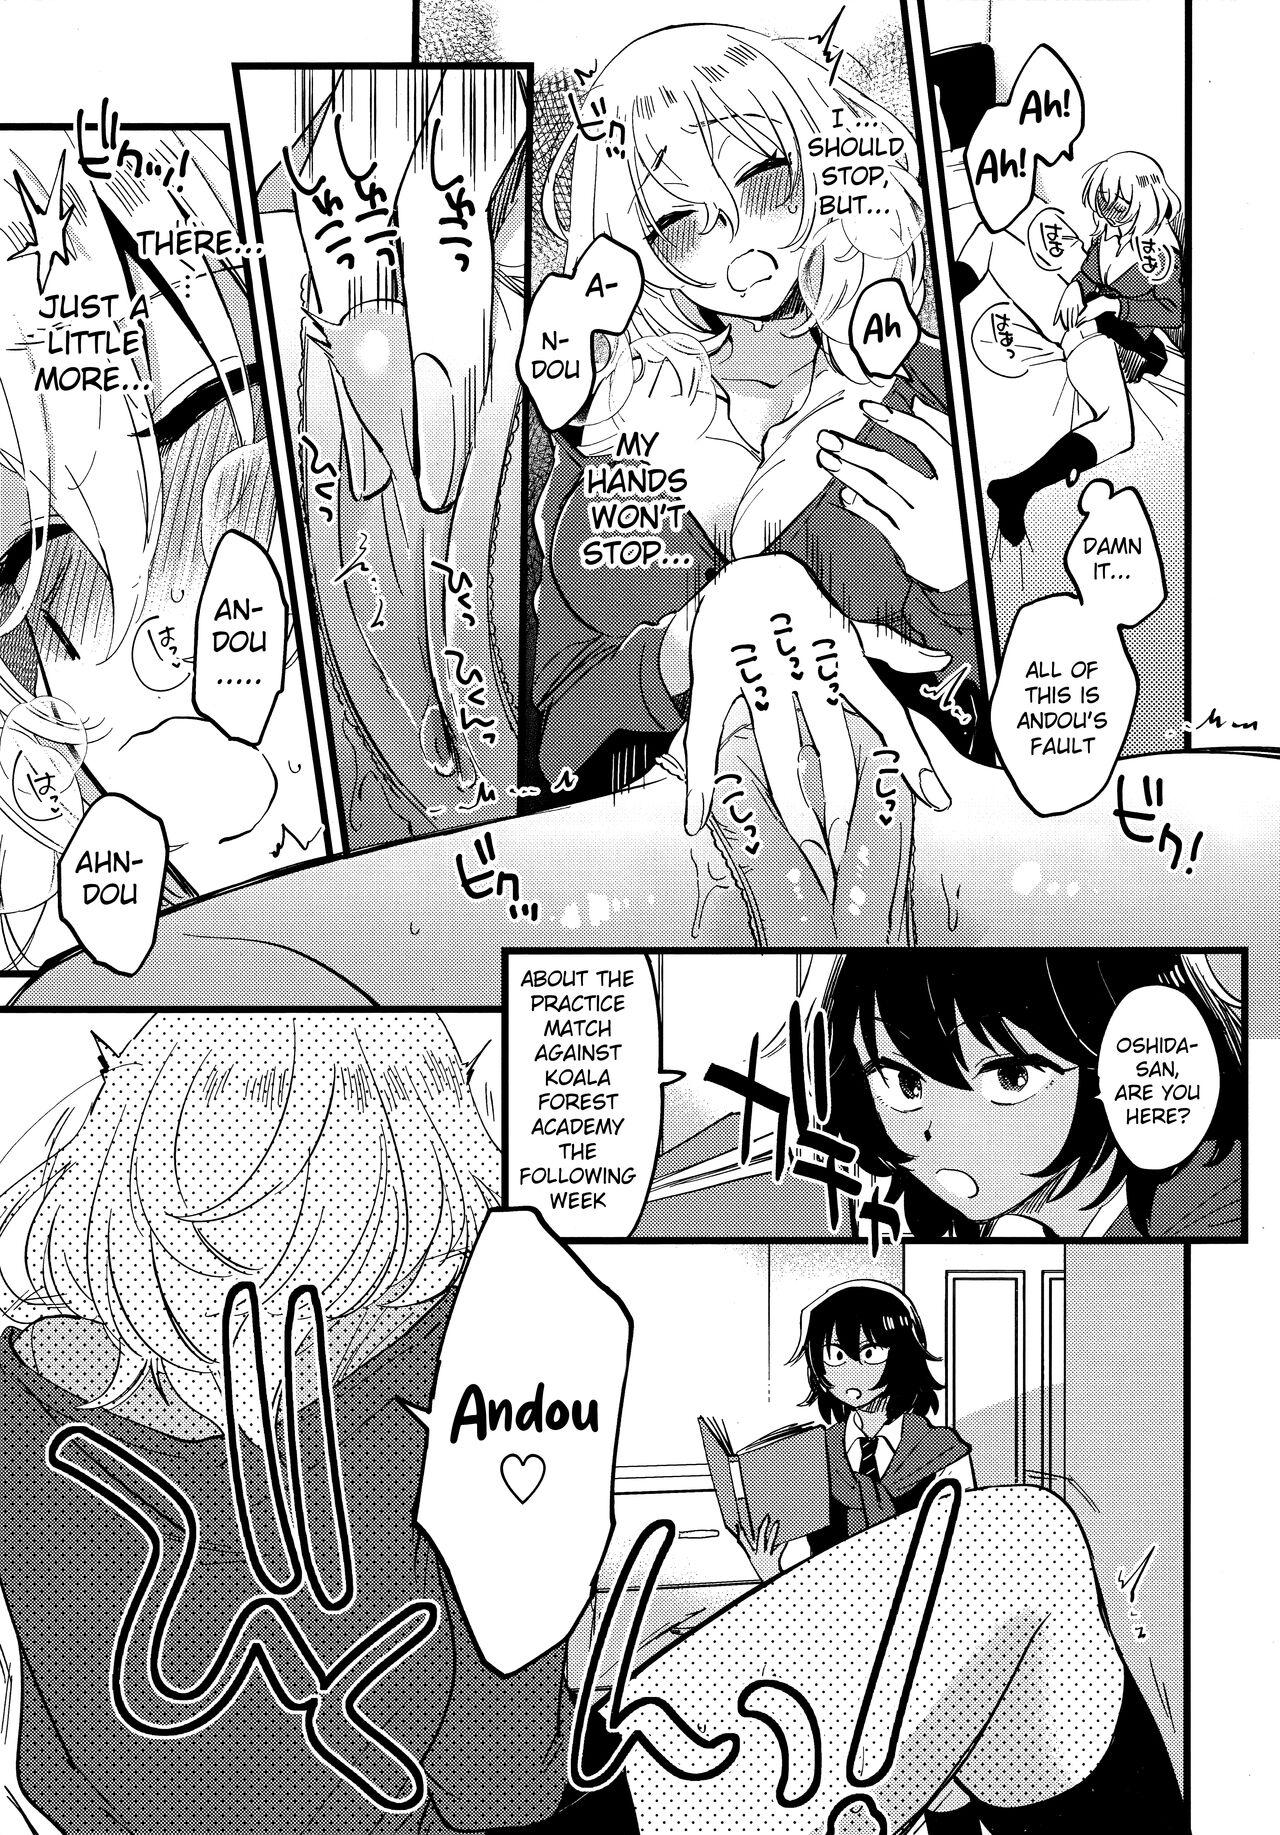 Women Fucking AnOshi, Nakayoku! - Girls und panzer Insertion - Page 8